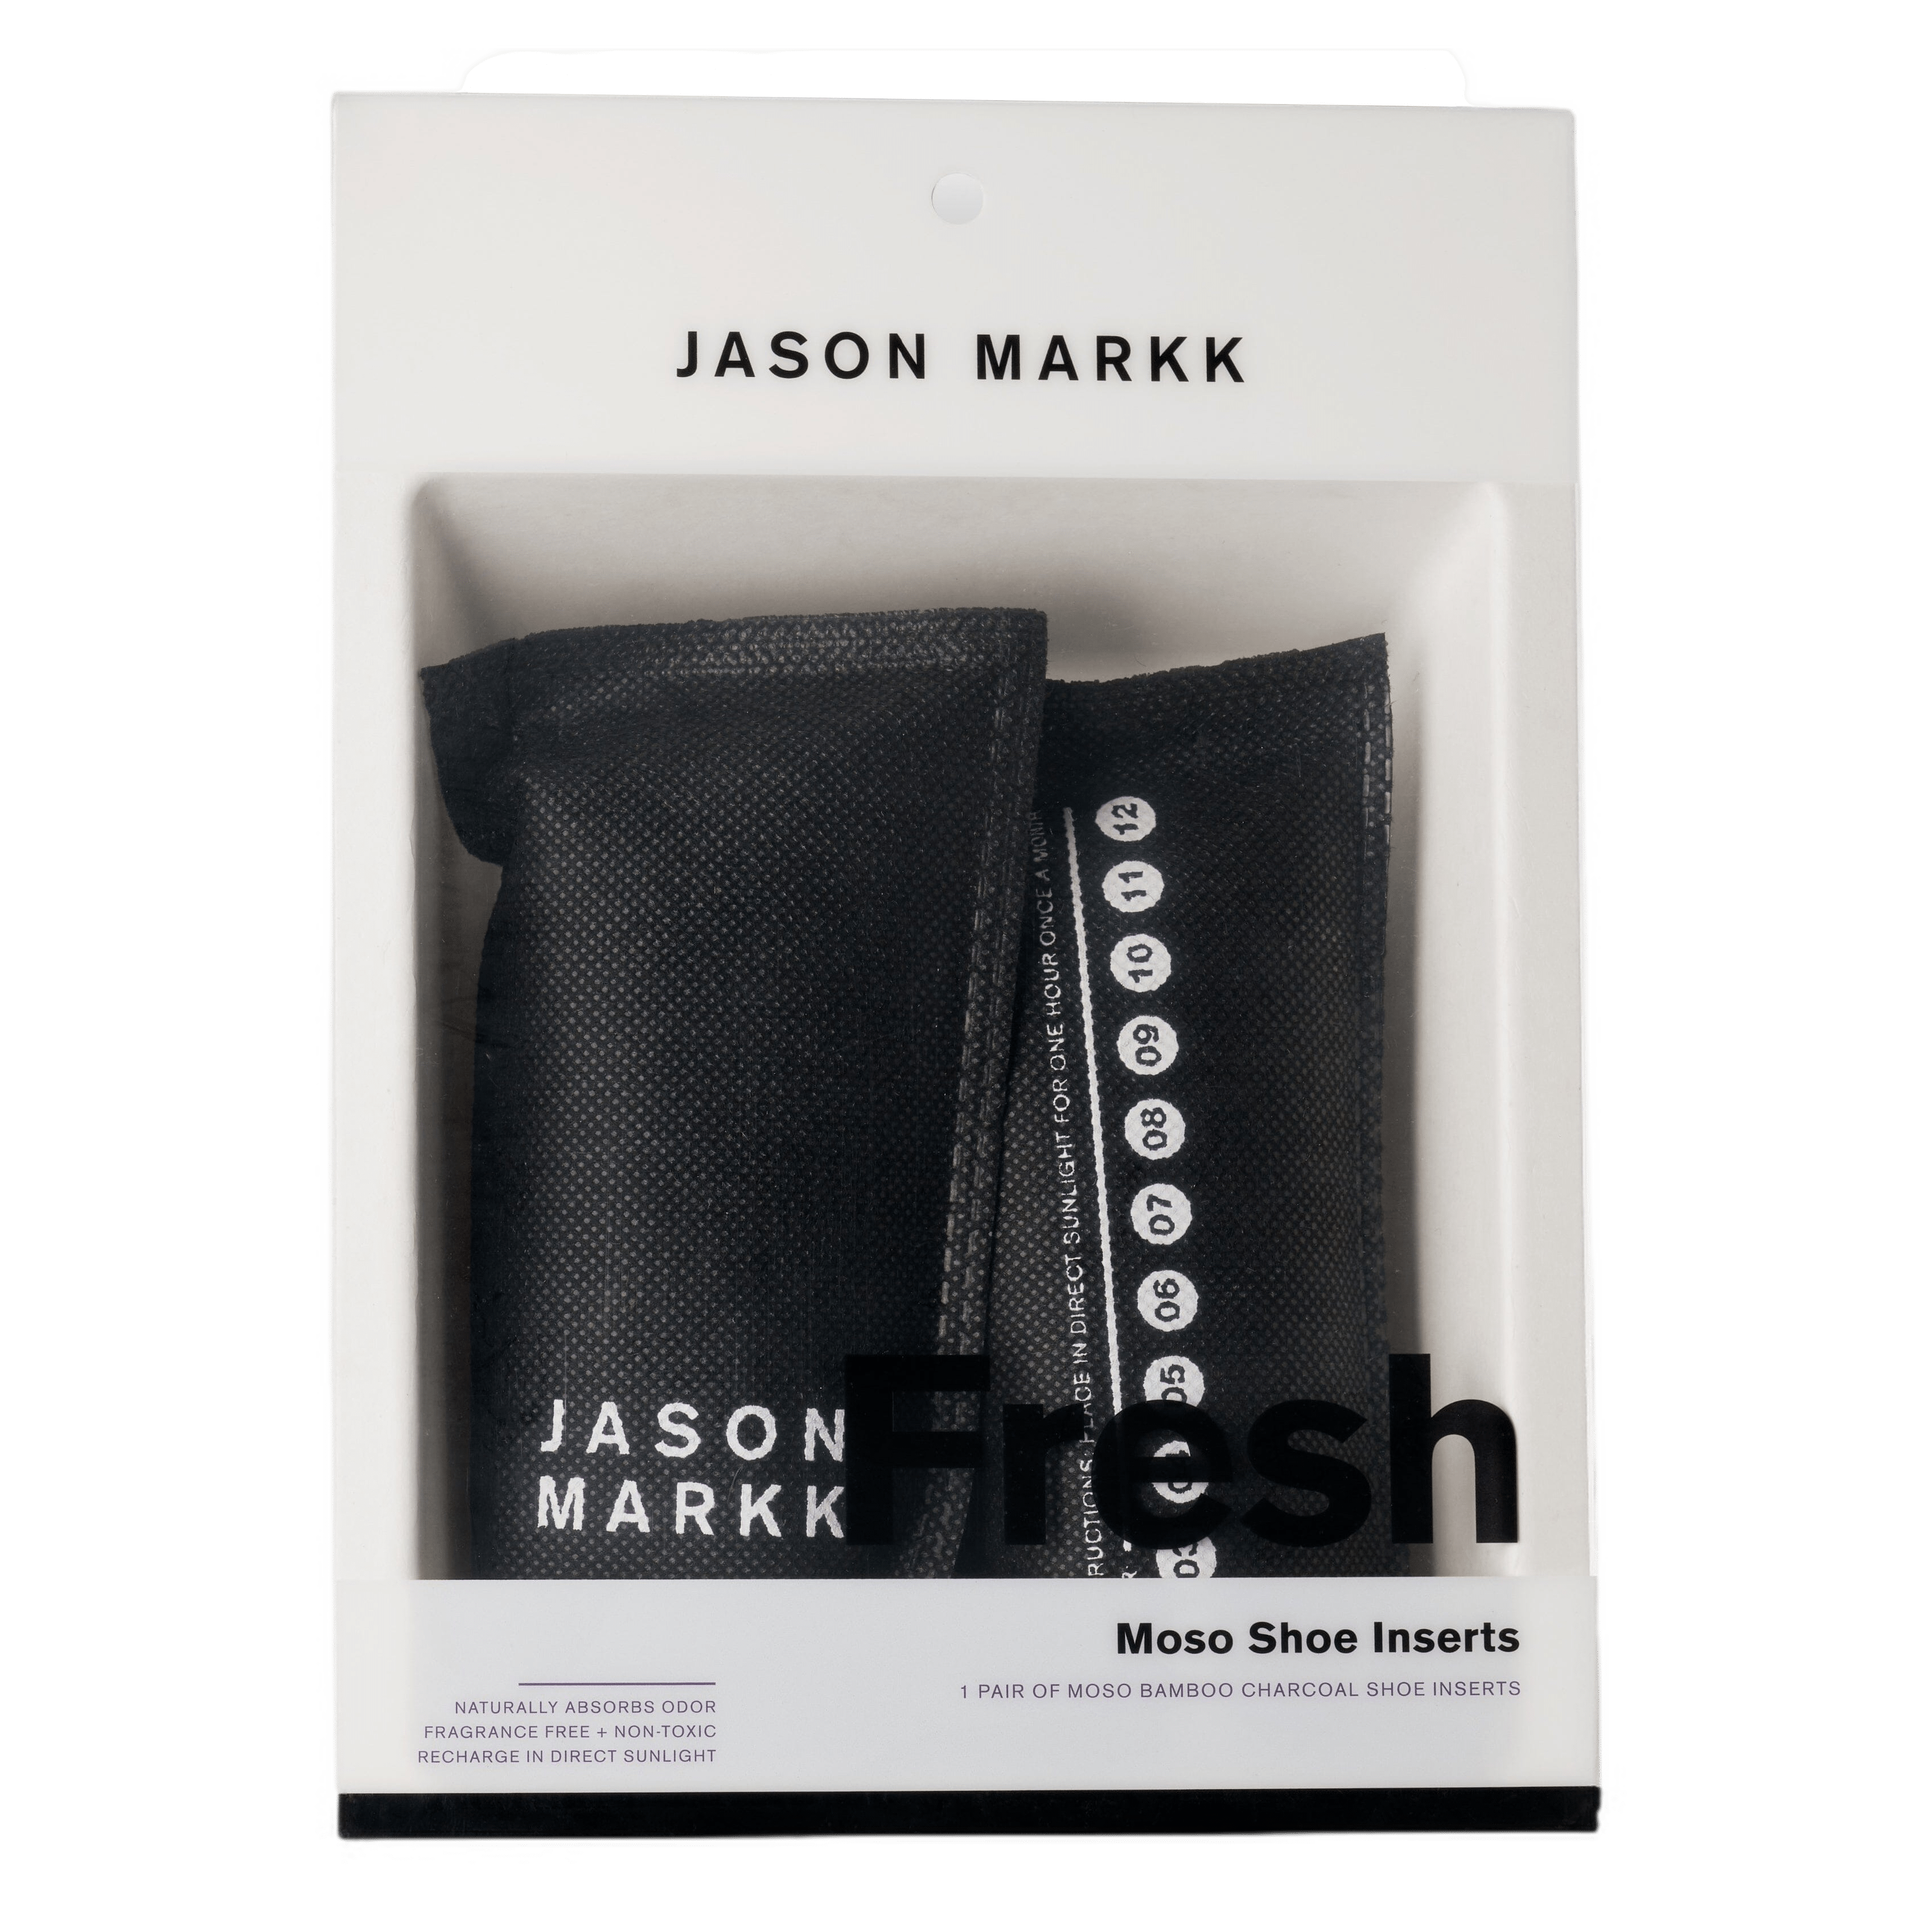 Jason Markk Moso Freshener skoinnlegg